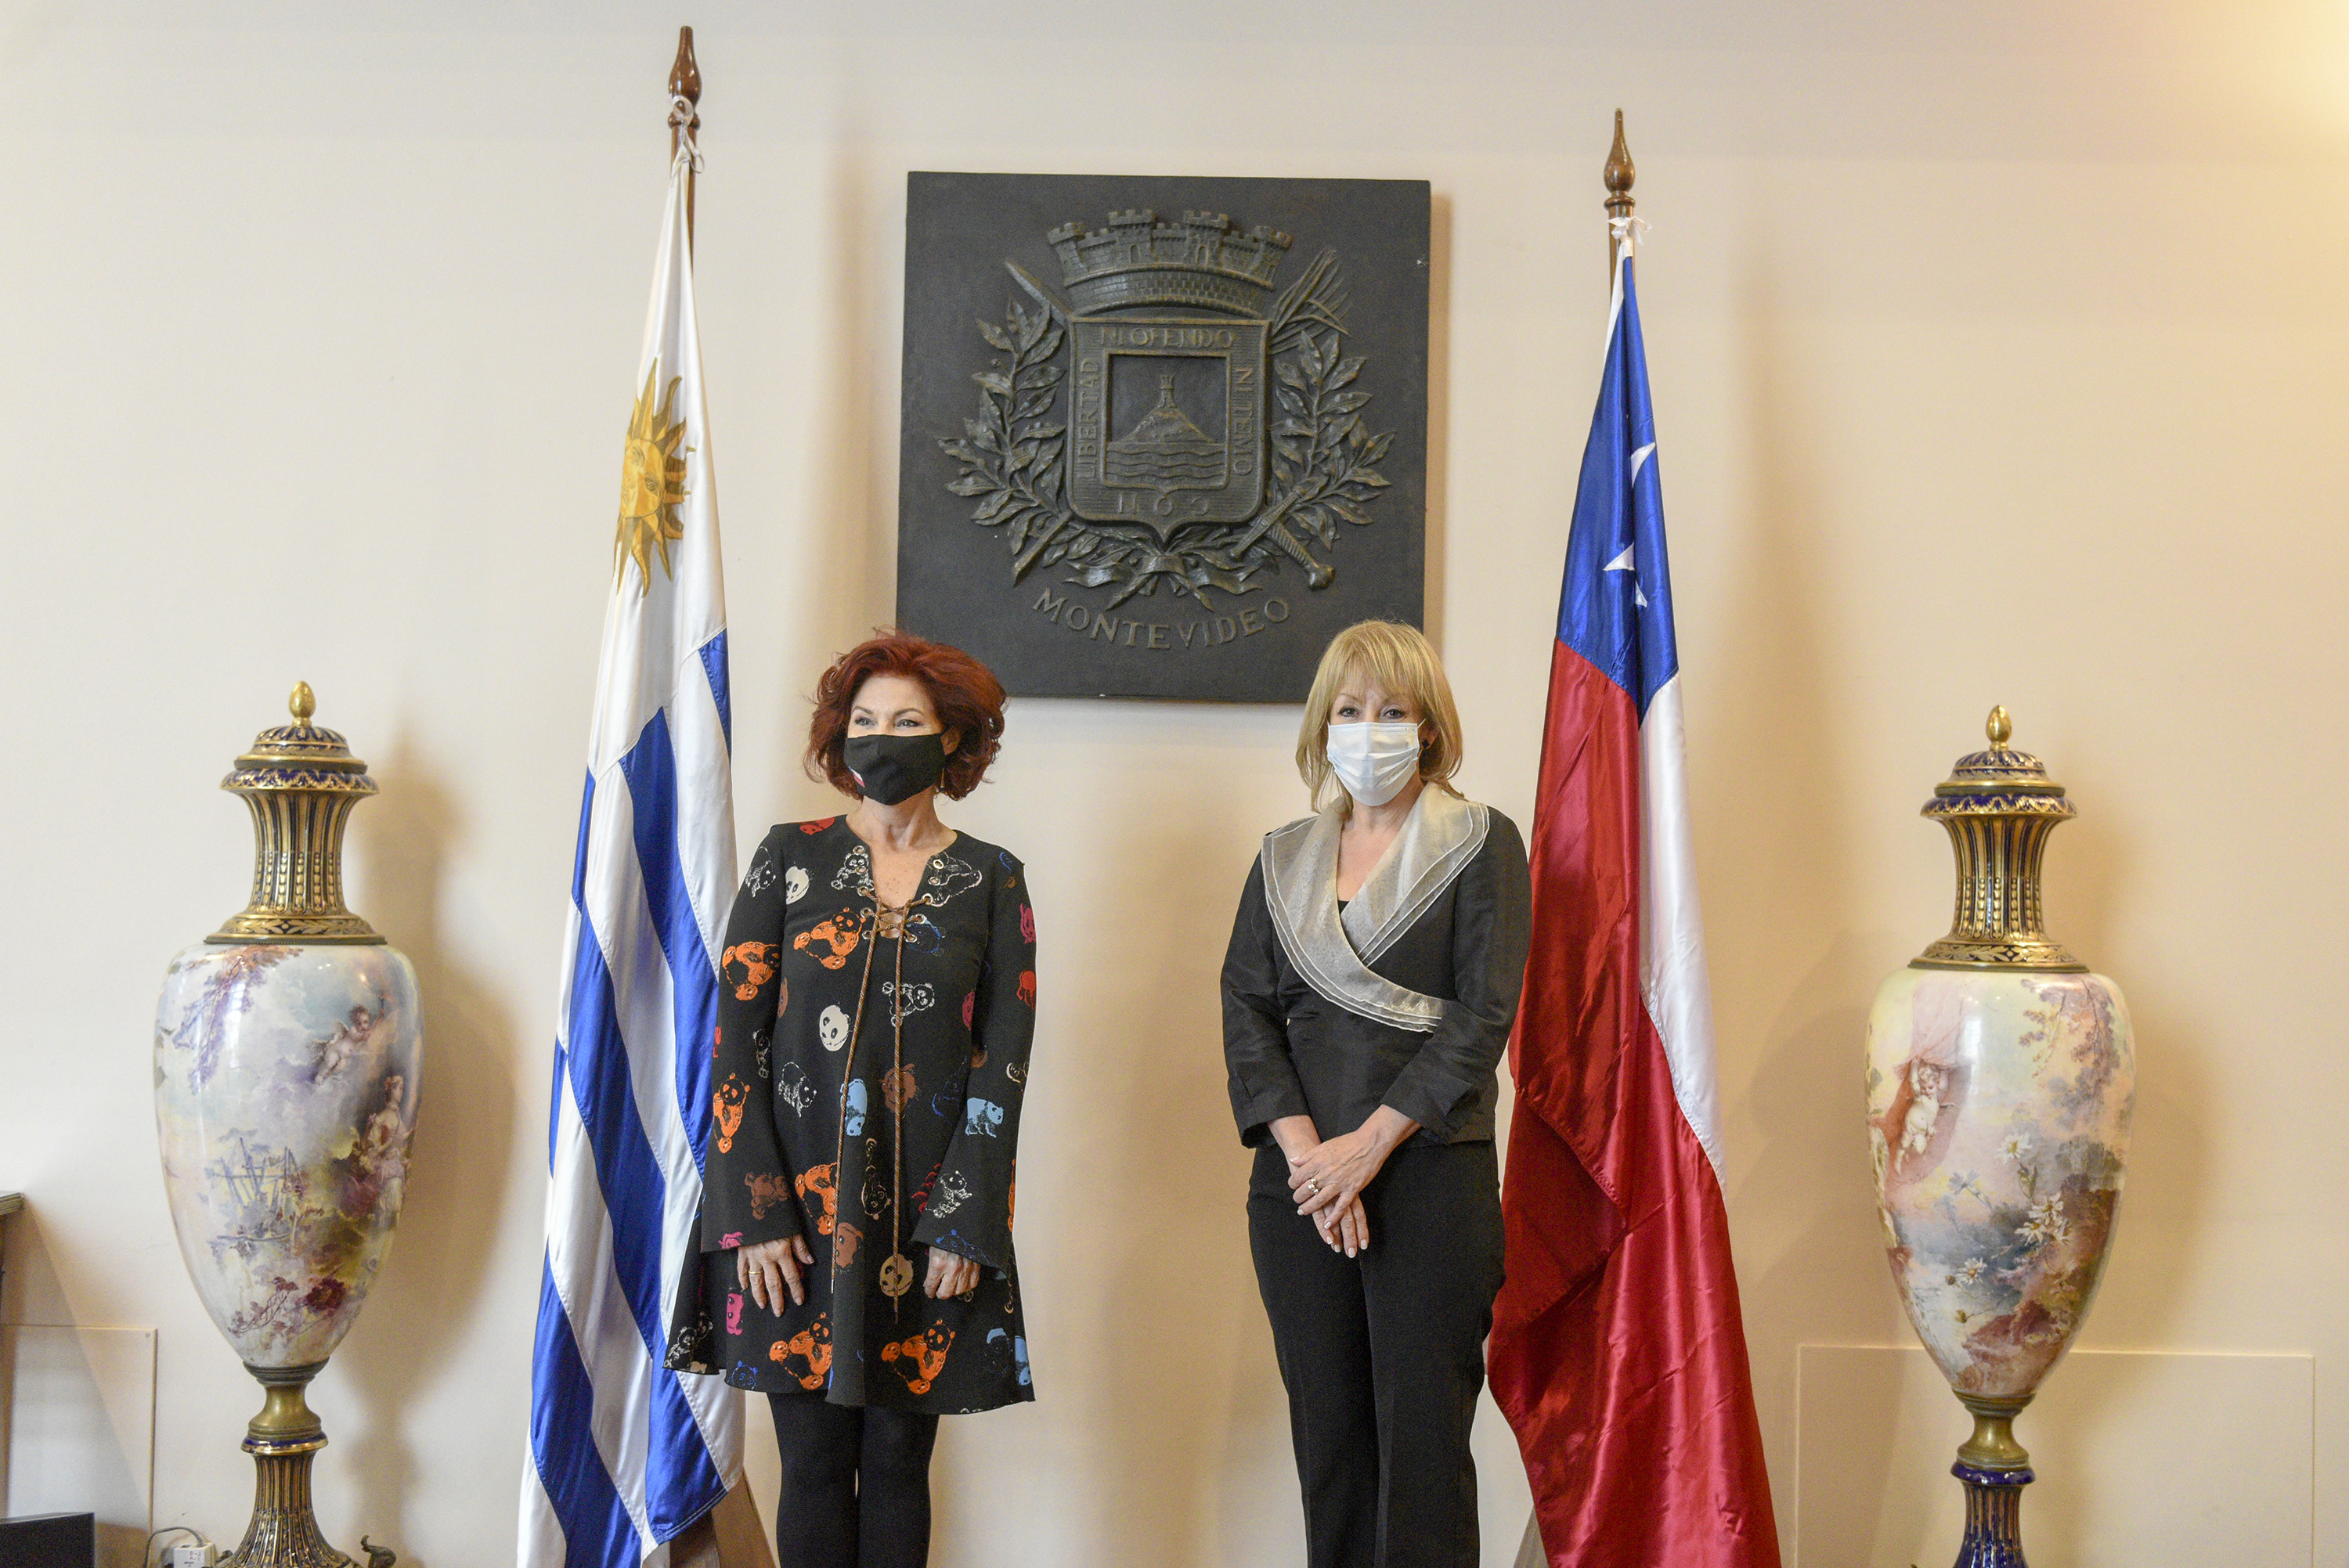 Visita de cortesía de Embajadora de Chile en Uruguay